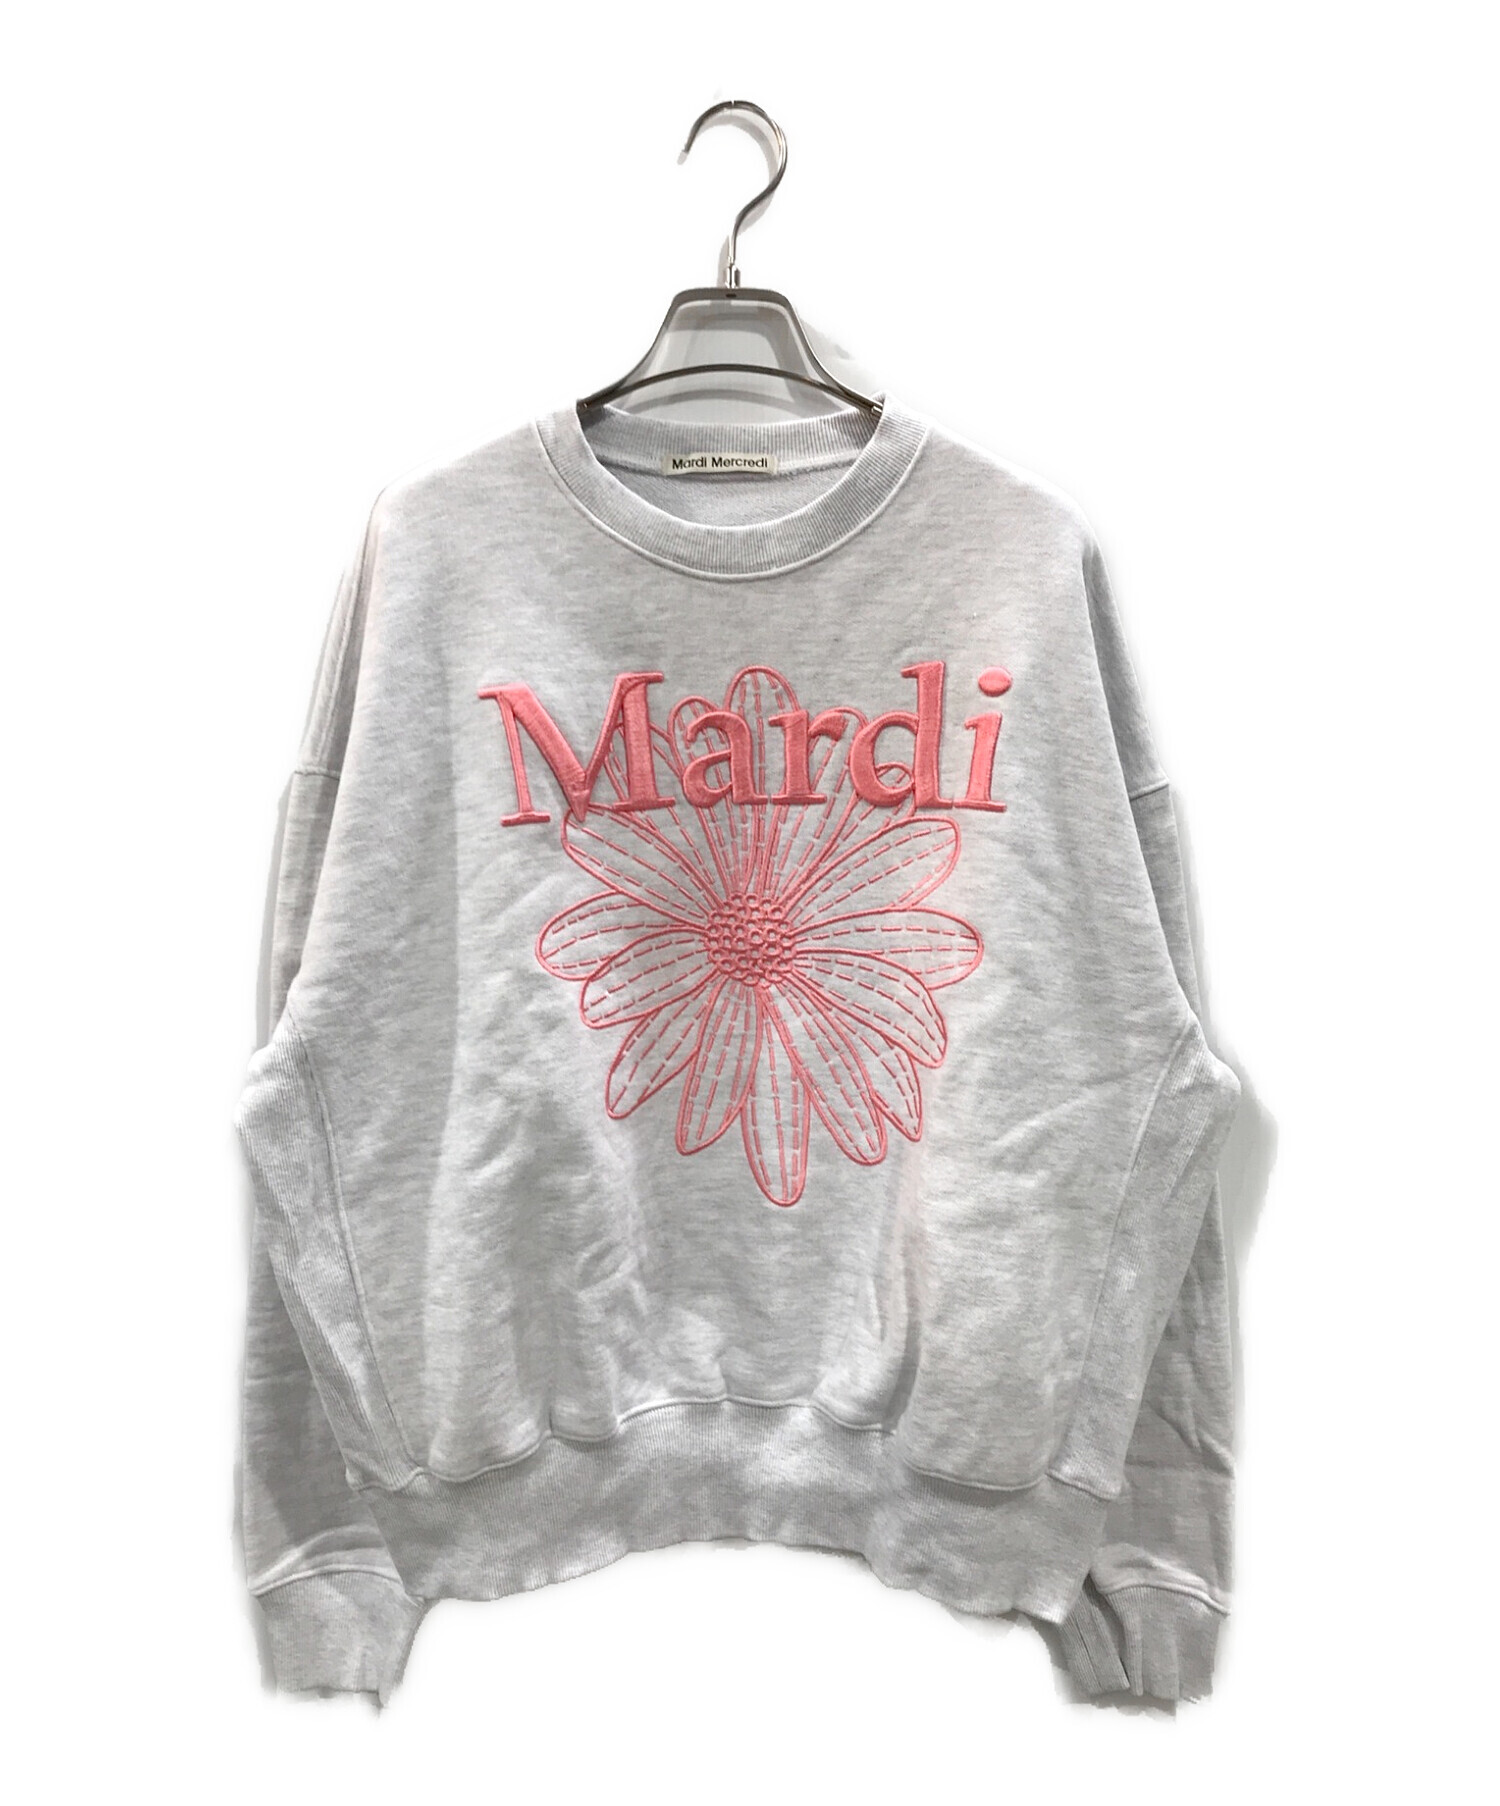 世界有名な Mardi Mercredi マルディメクルディグレー 刺繍スウェット